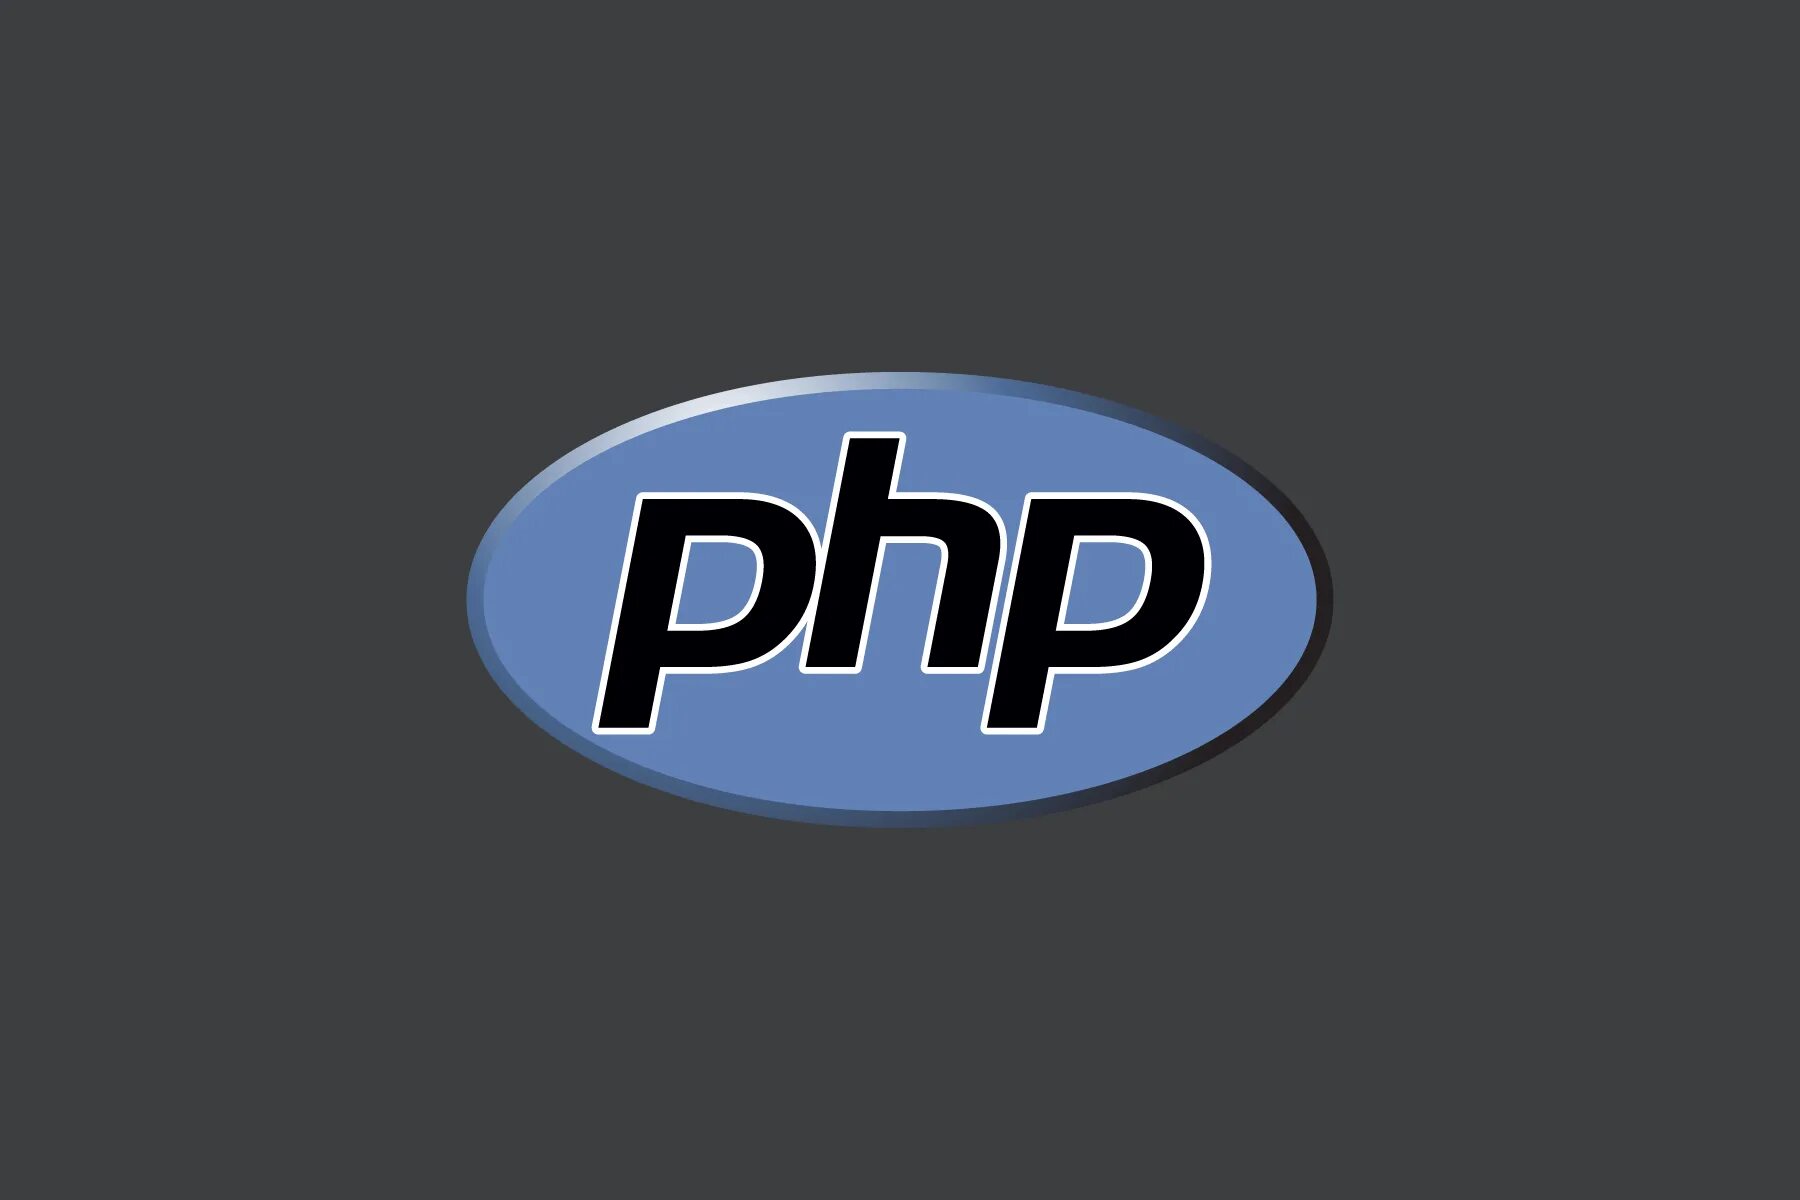 Php unique. Php логотип. Значок php. Php язык программирования логотип. Php картинка.